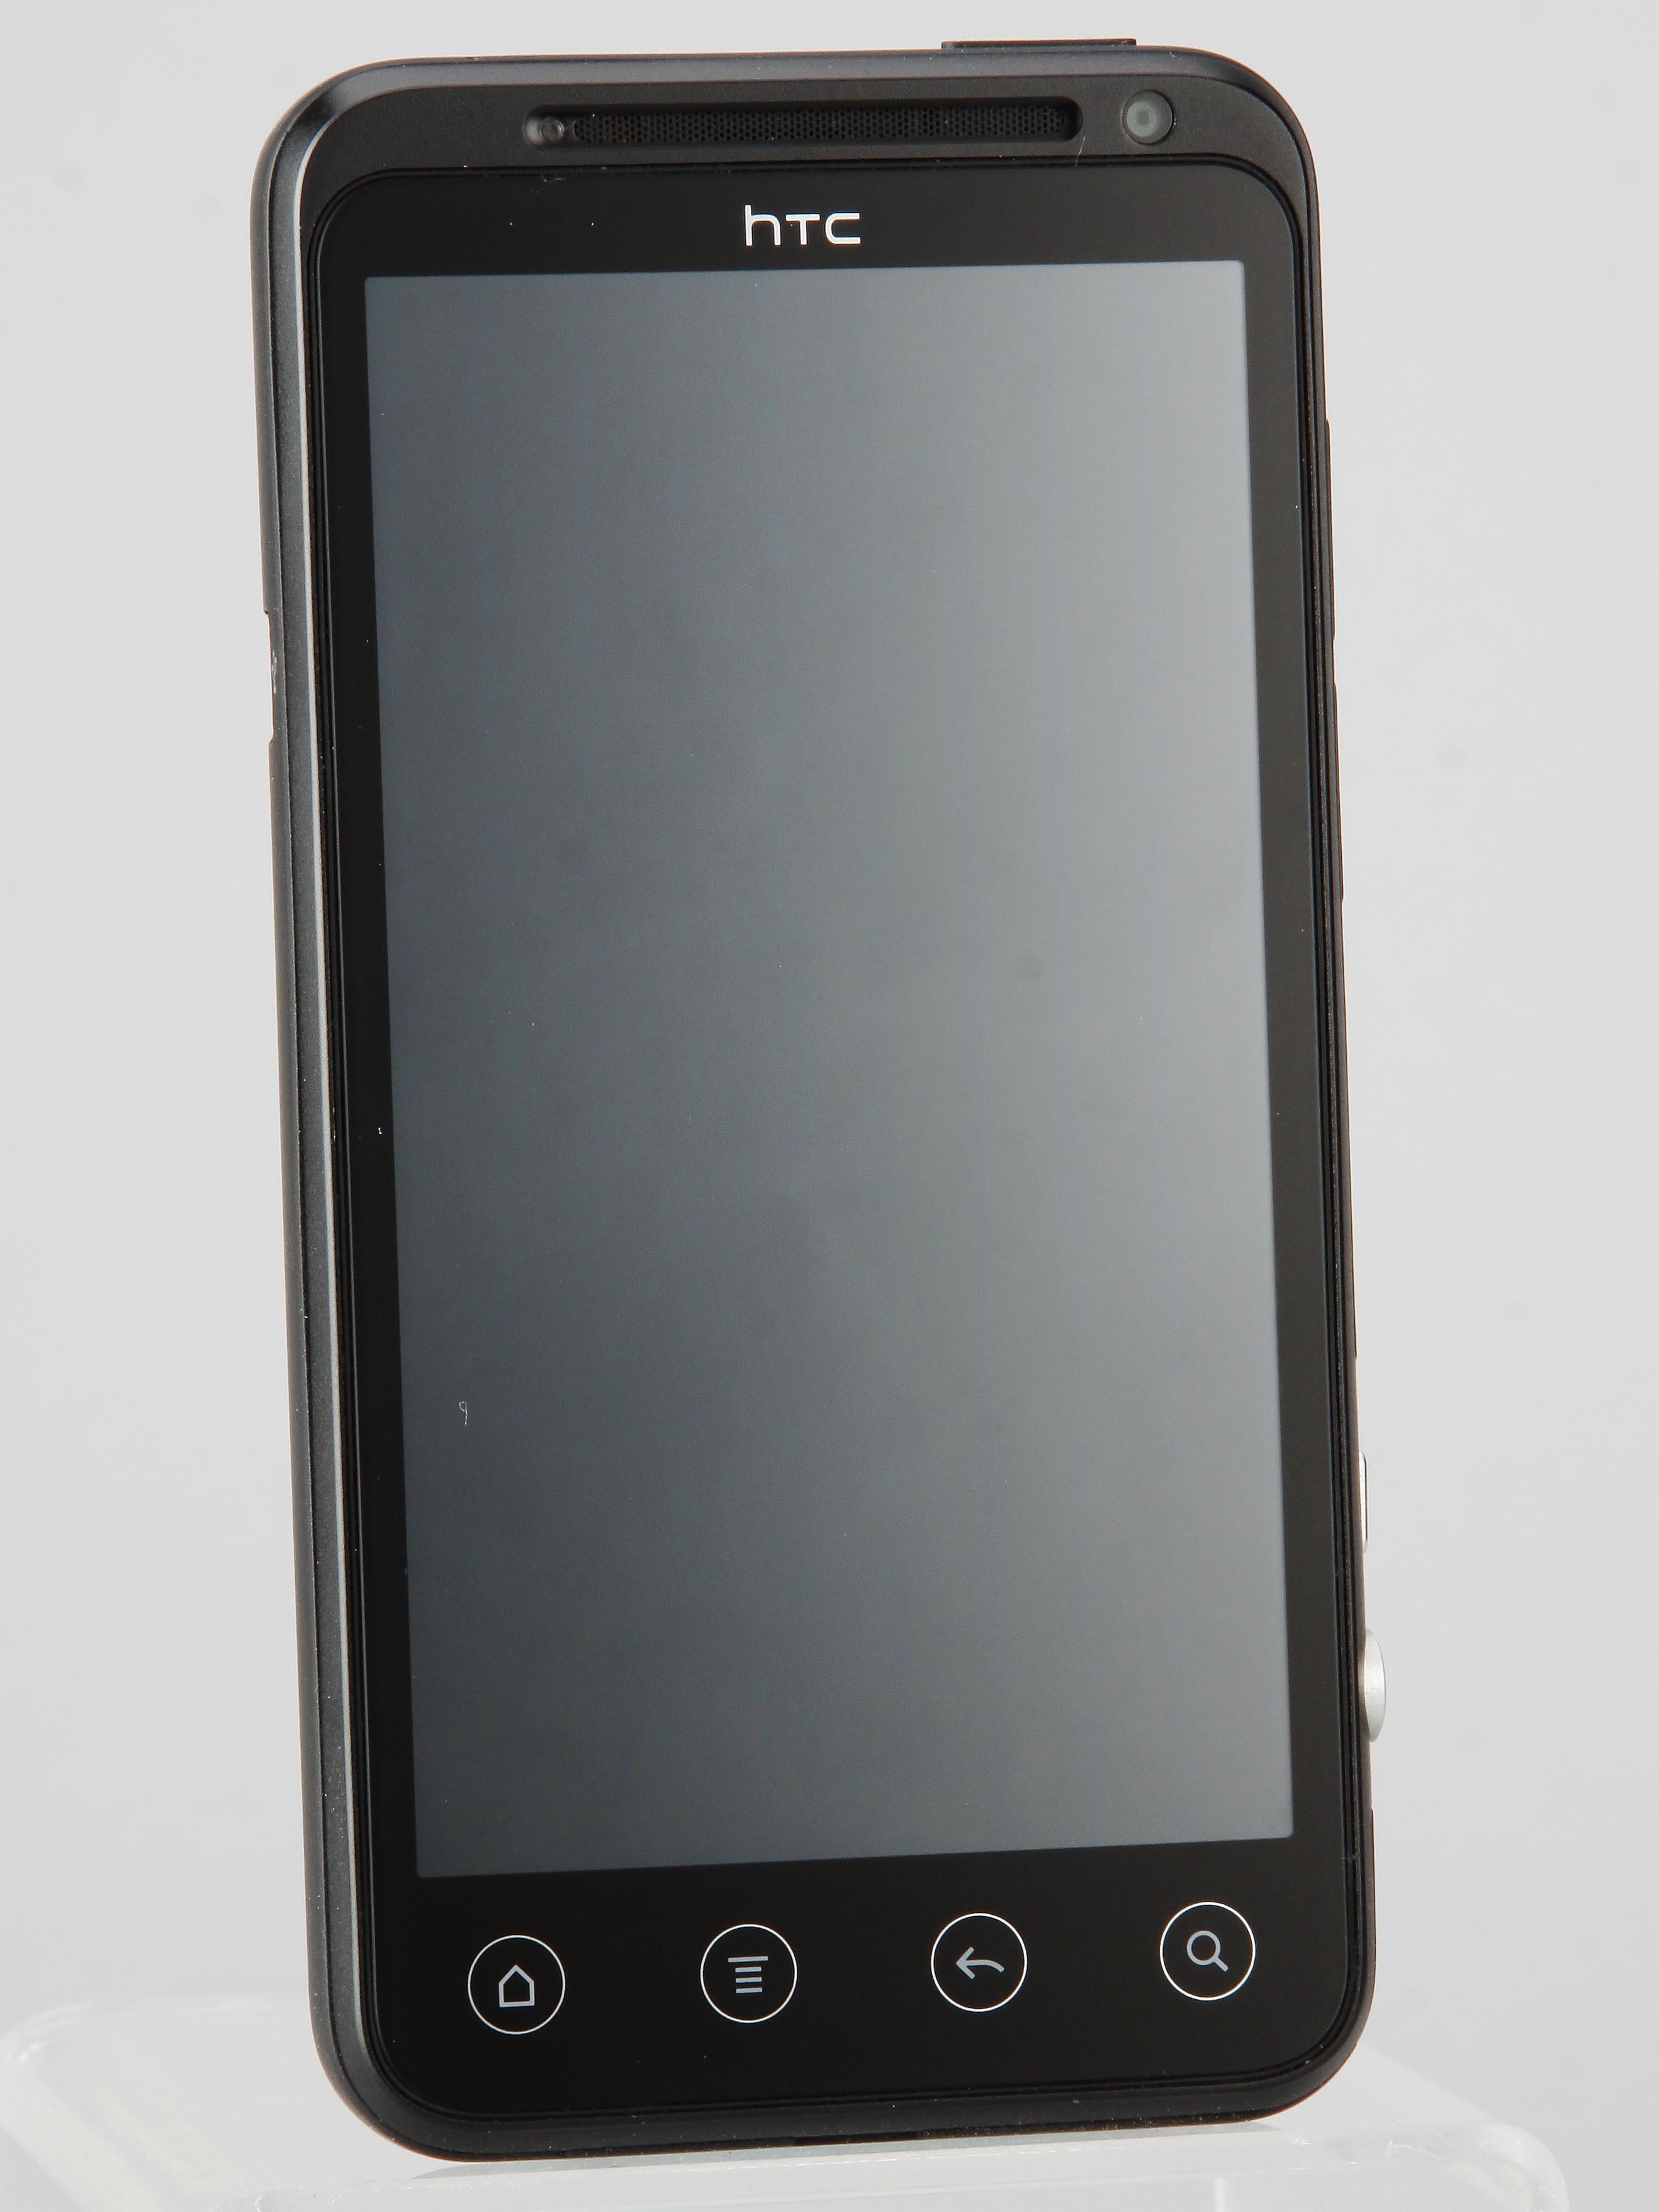 雙核心 3D 手機 HTC EVO 3D 實測